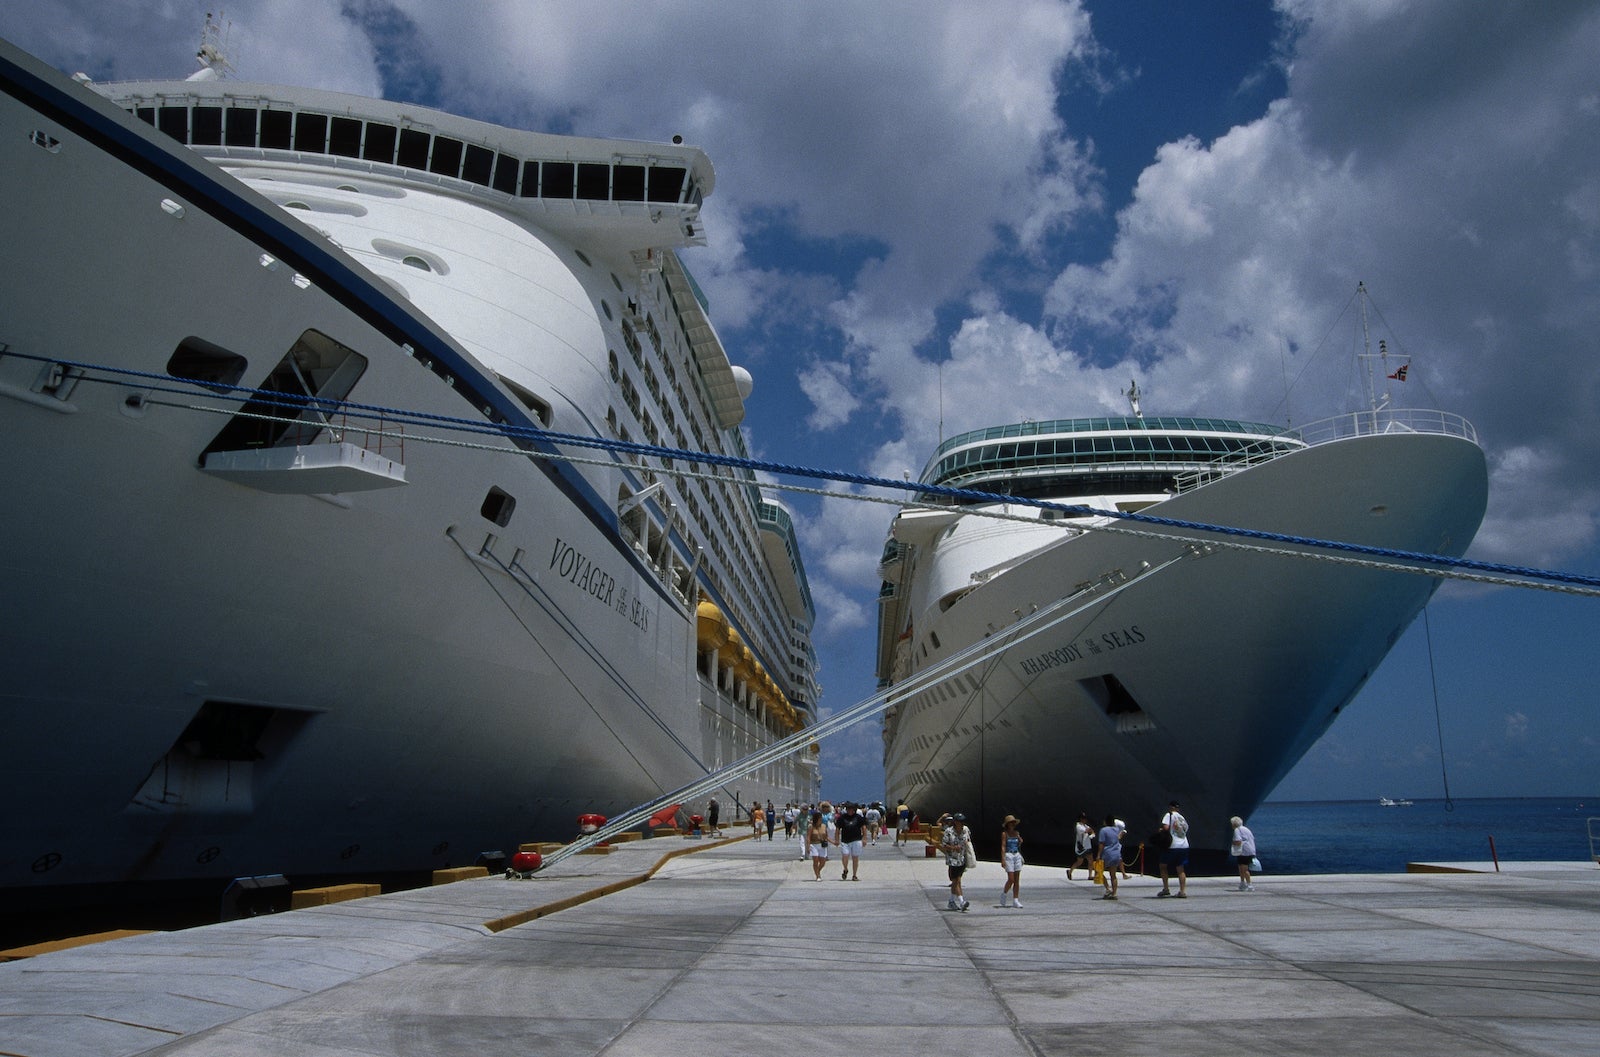 cruise ship tendered vs docked